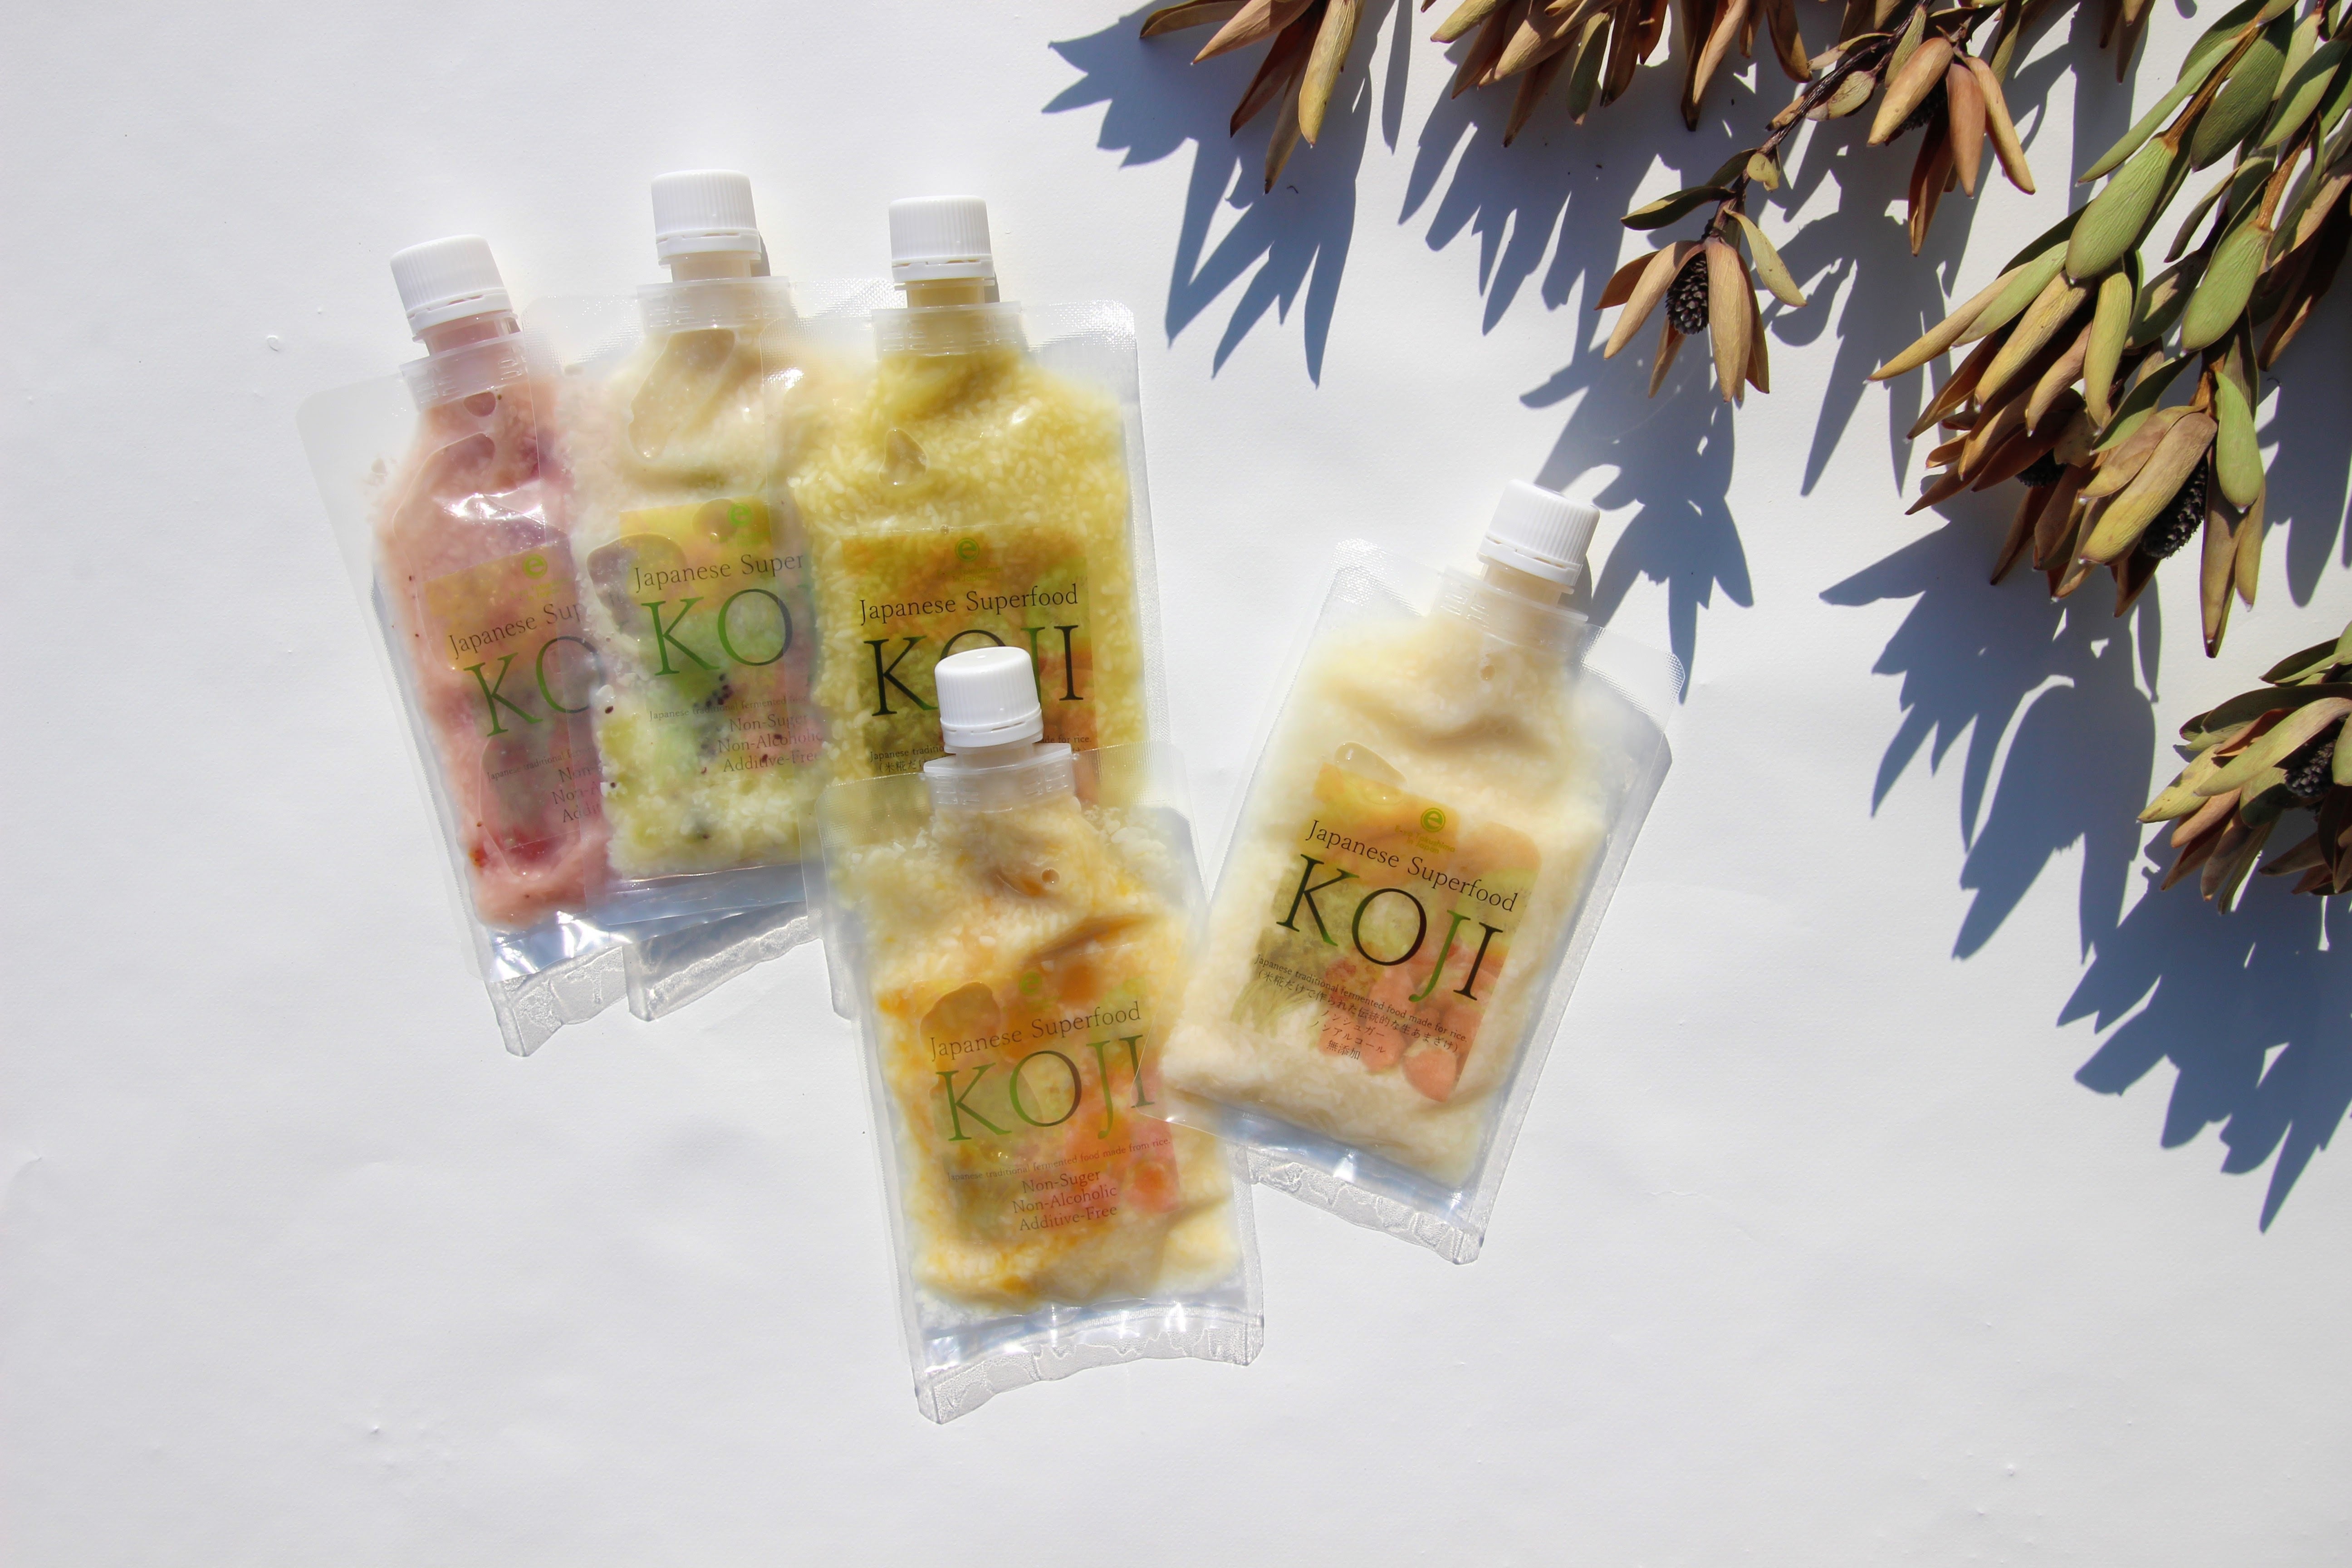 カットフルーツ入りの甘酒「Japanese Superfood KOJI」を
3月18日より販売開始　
～持ち運びに便利なパウチタイプのパッケージ～